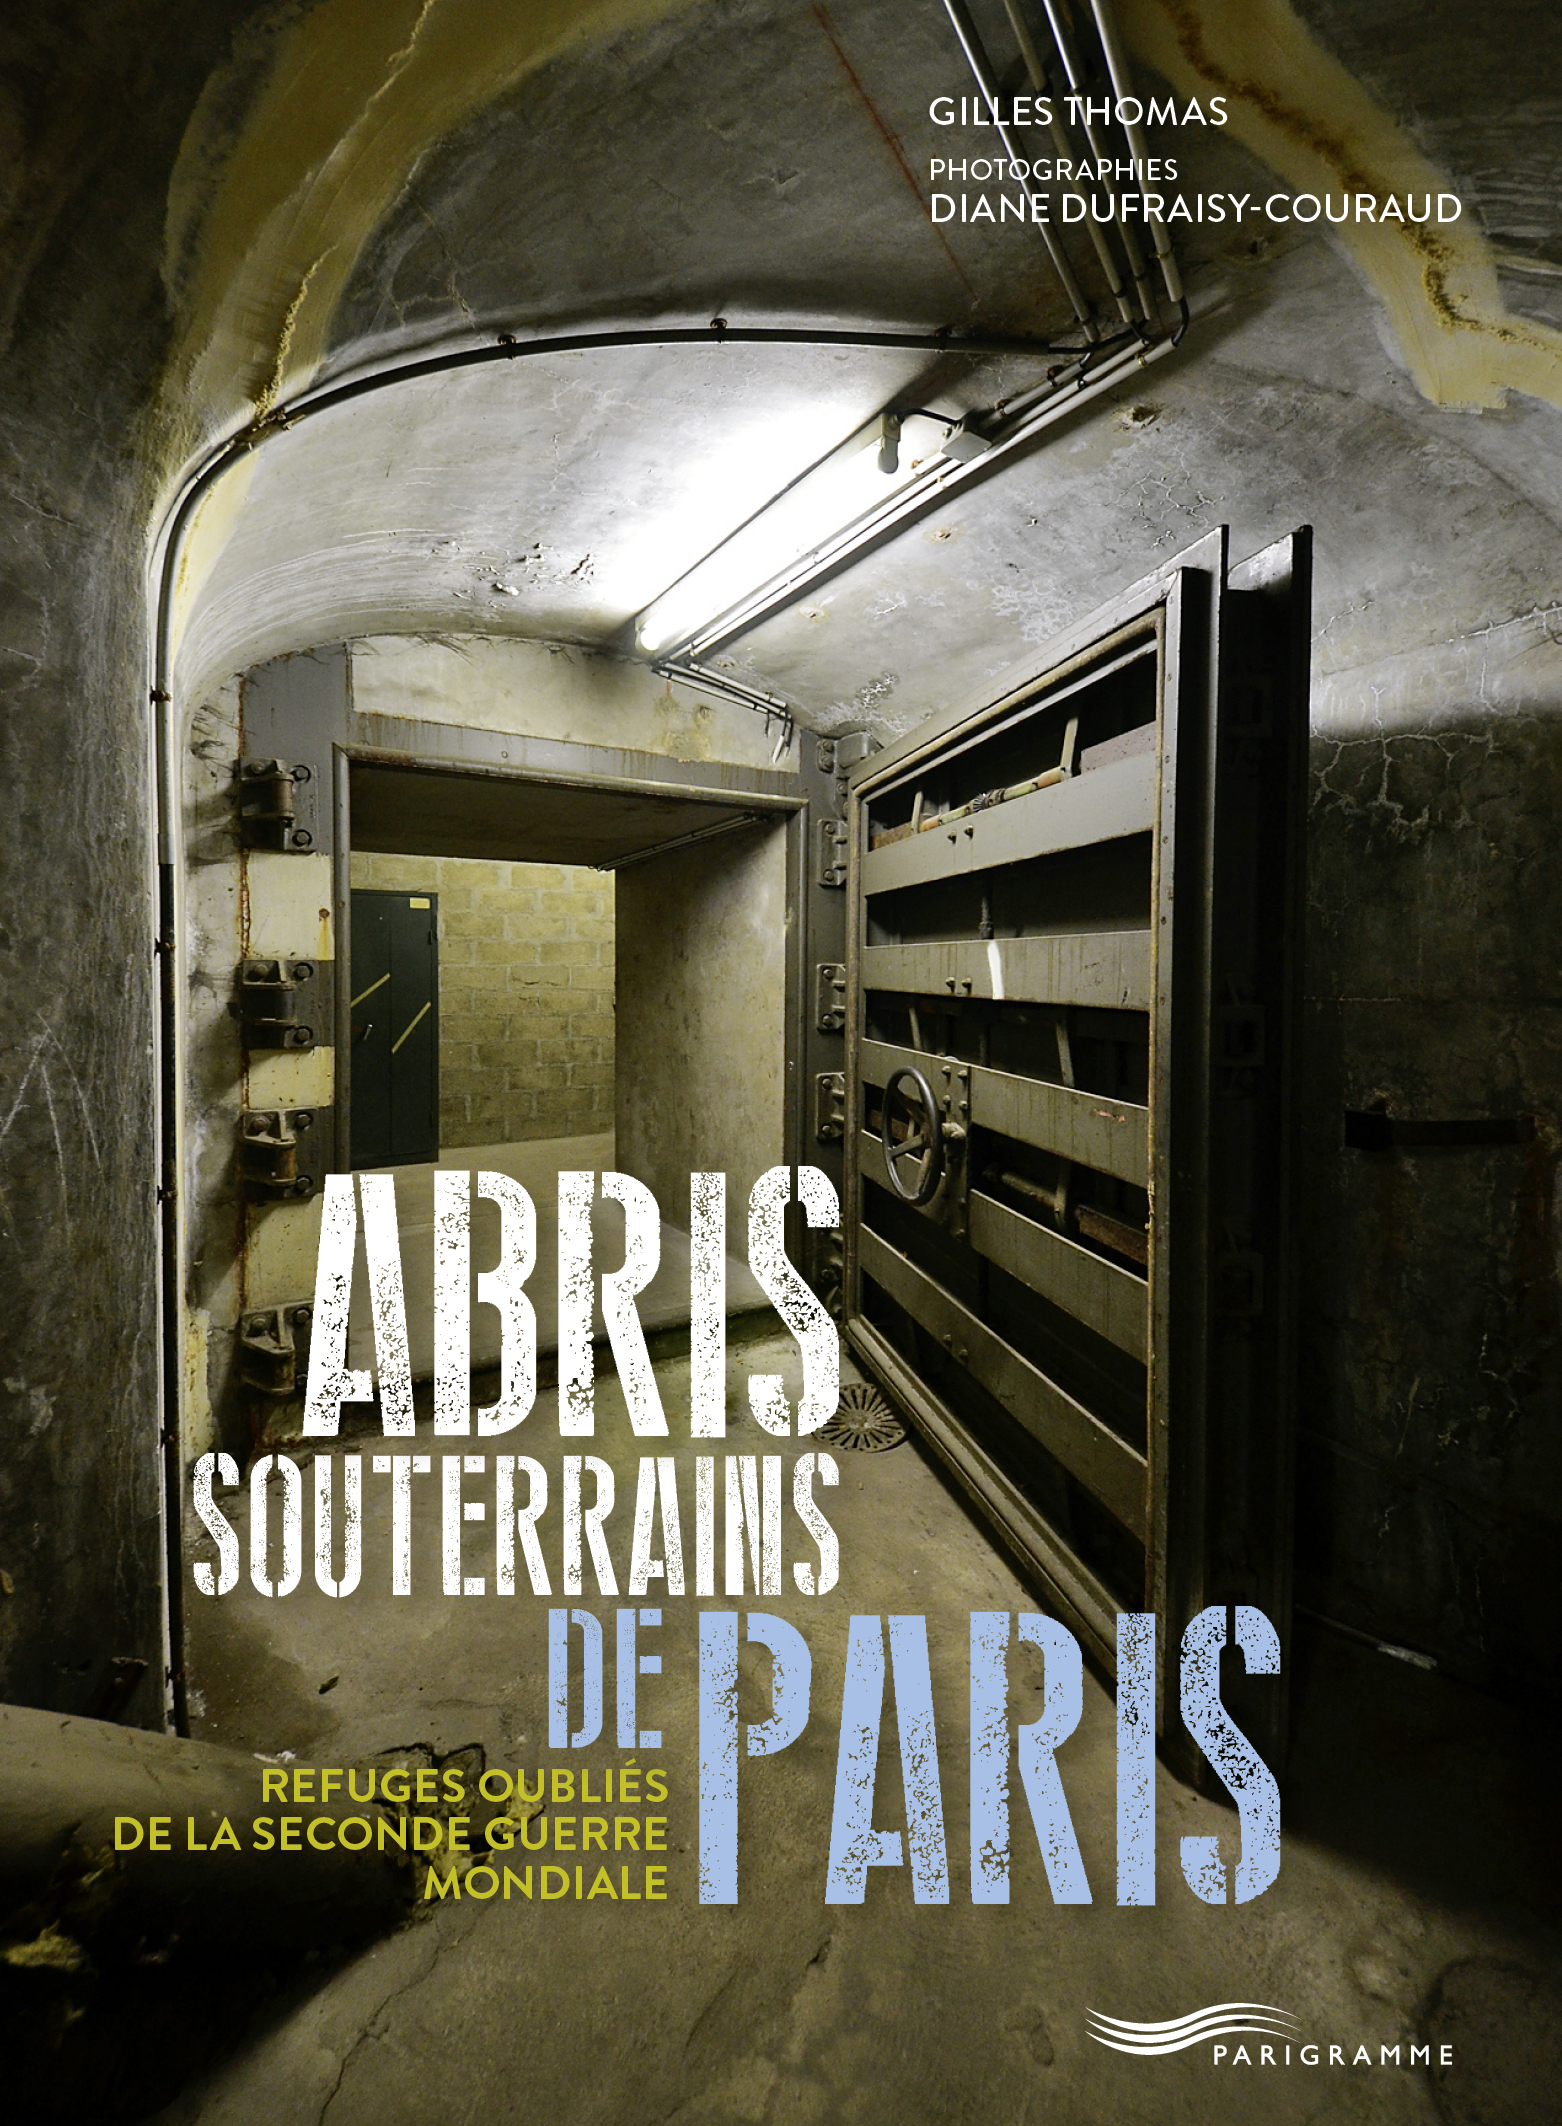 ÉPUISÉ - Abris souterrains de Paris. Refuges oubliés de la seconde guerre mondiale, 2017, 142 p.